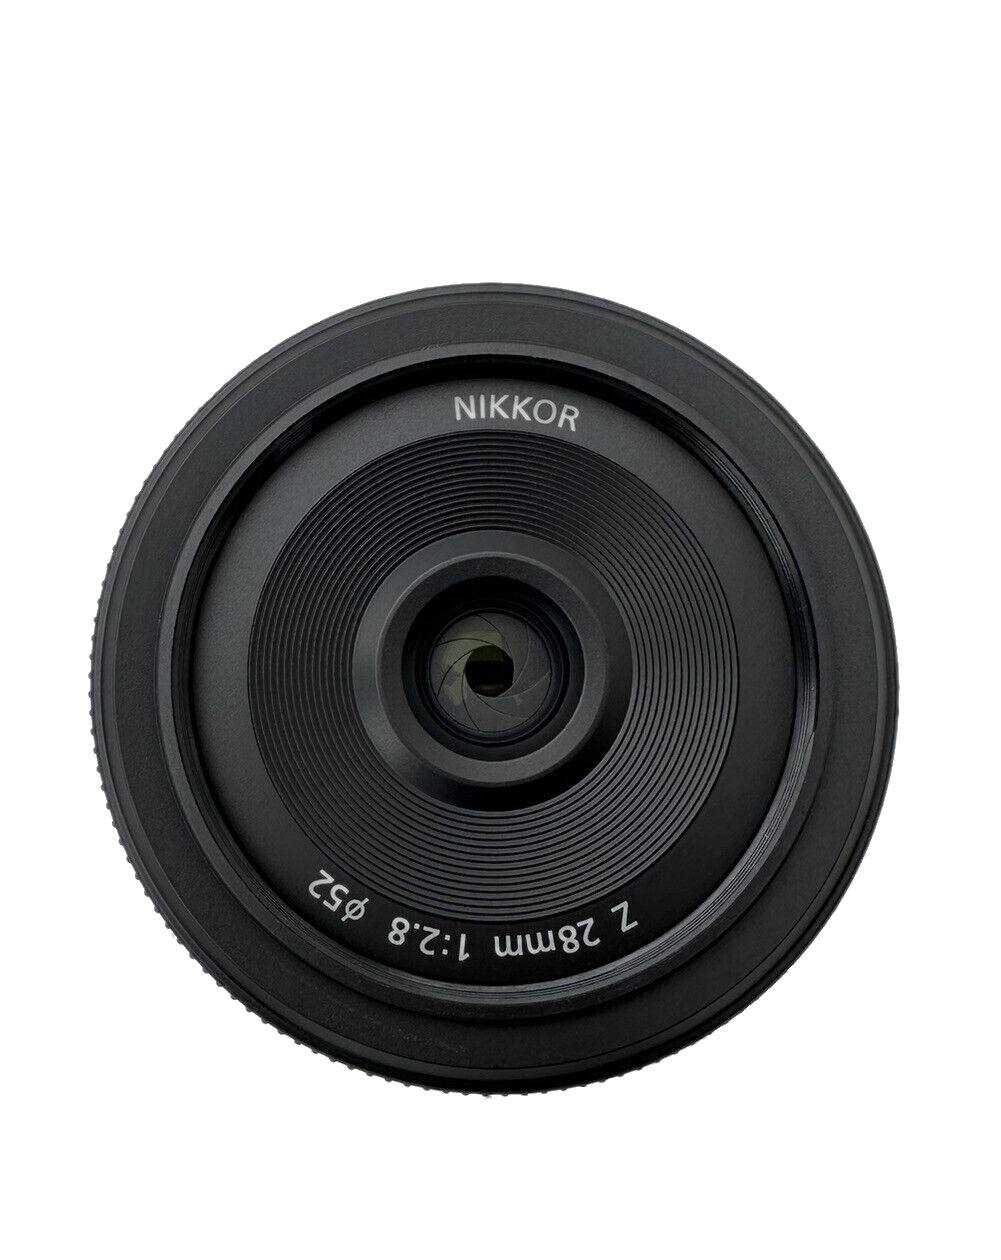 Nikon Z 28mm f2.8 SE lens